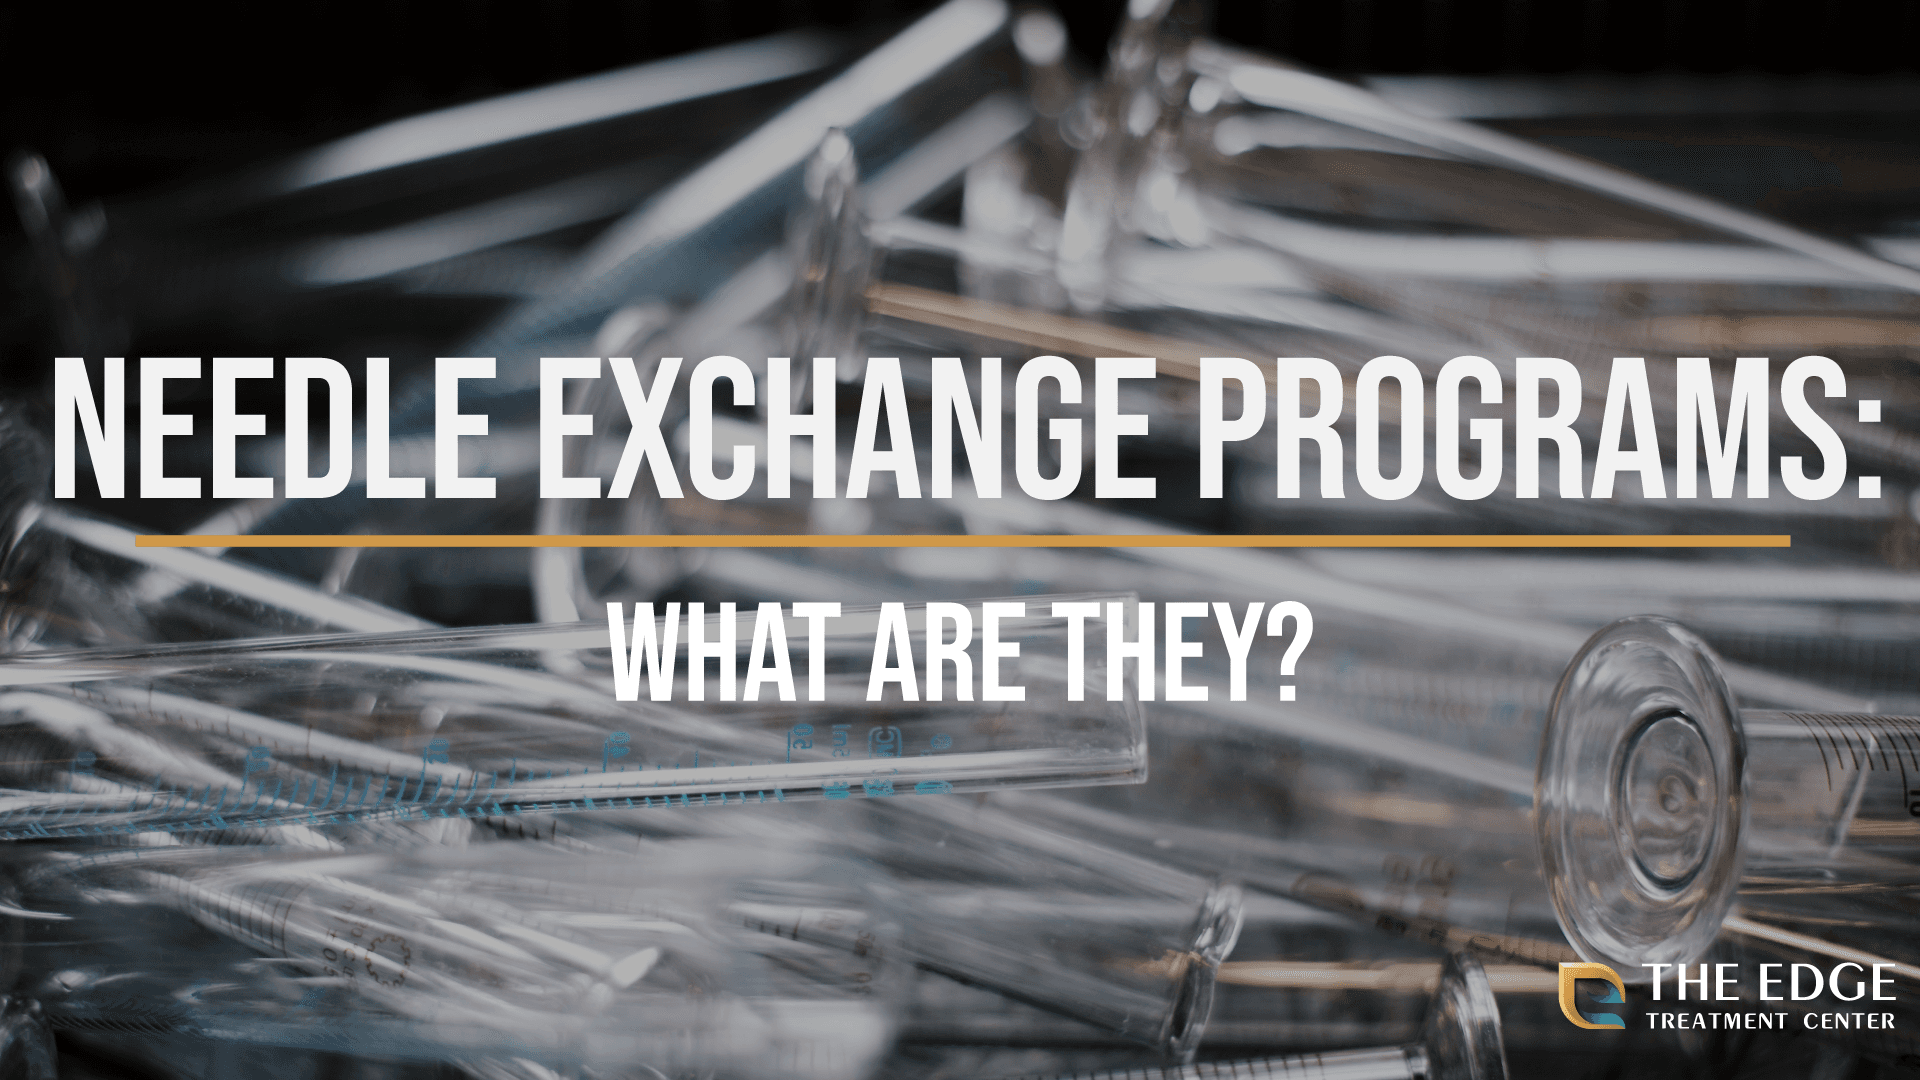 Needle Exchange Programs